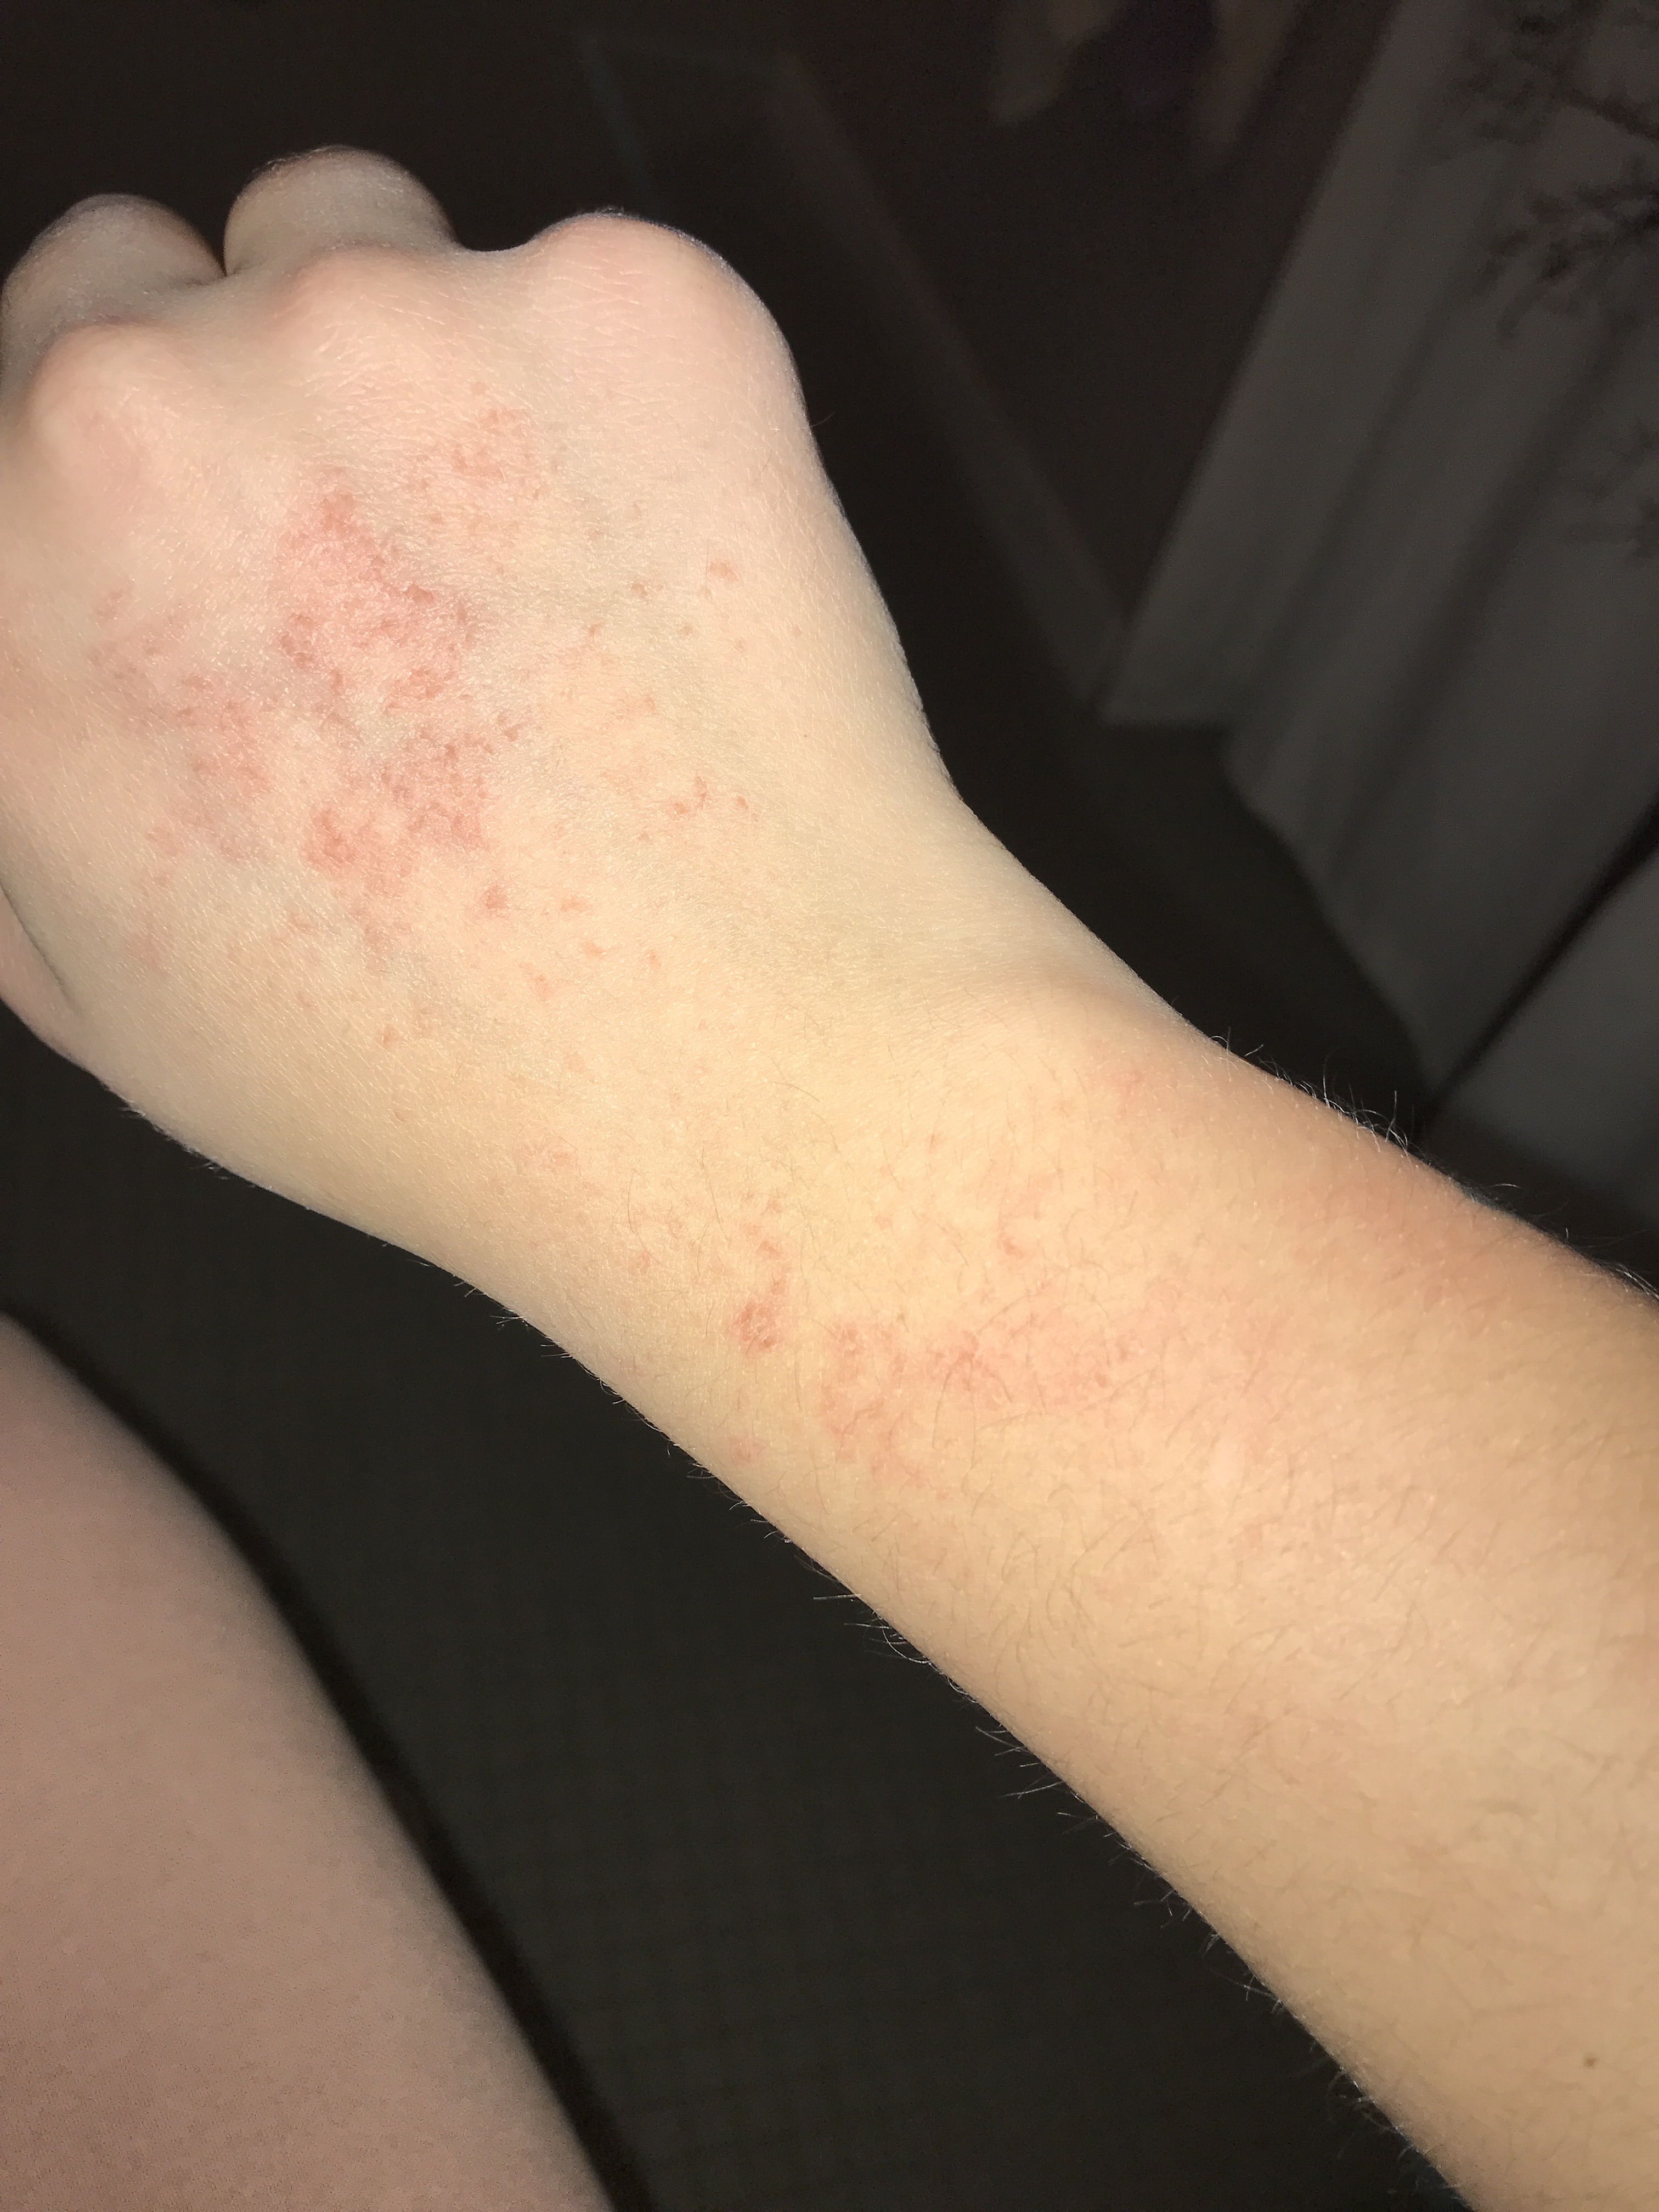 rash on back of hands